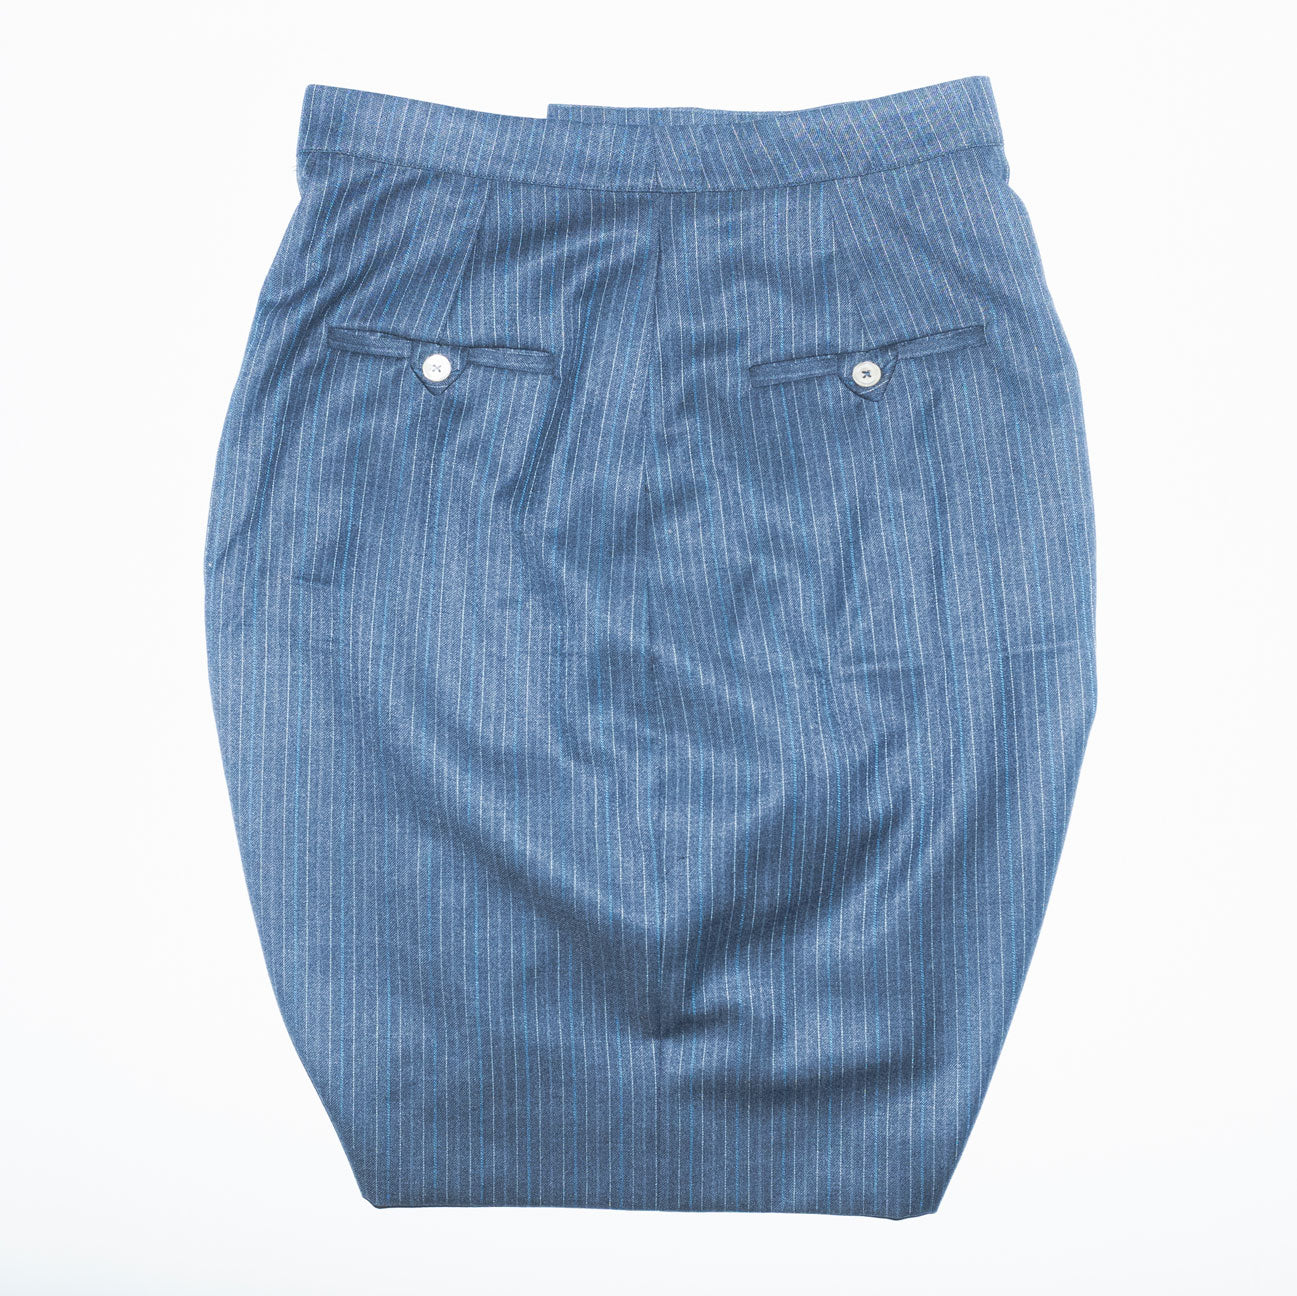 Archive Racing Short Warped Elastic Wool Skirt in Blue Pinstripe